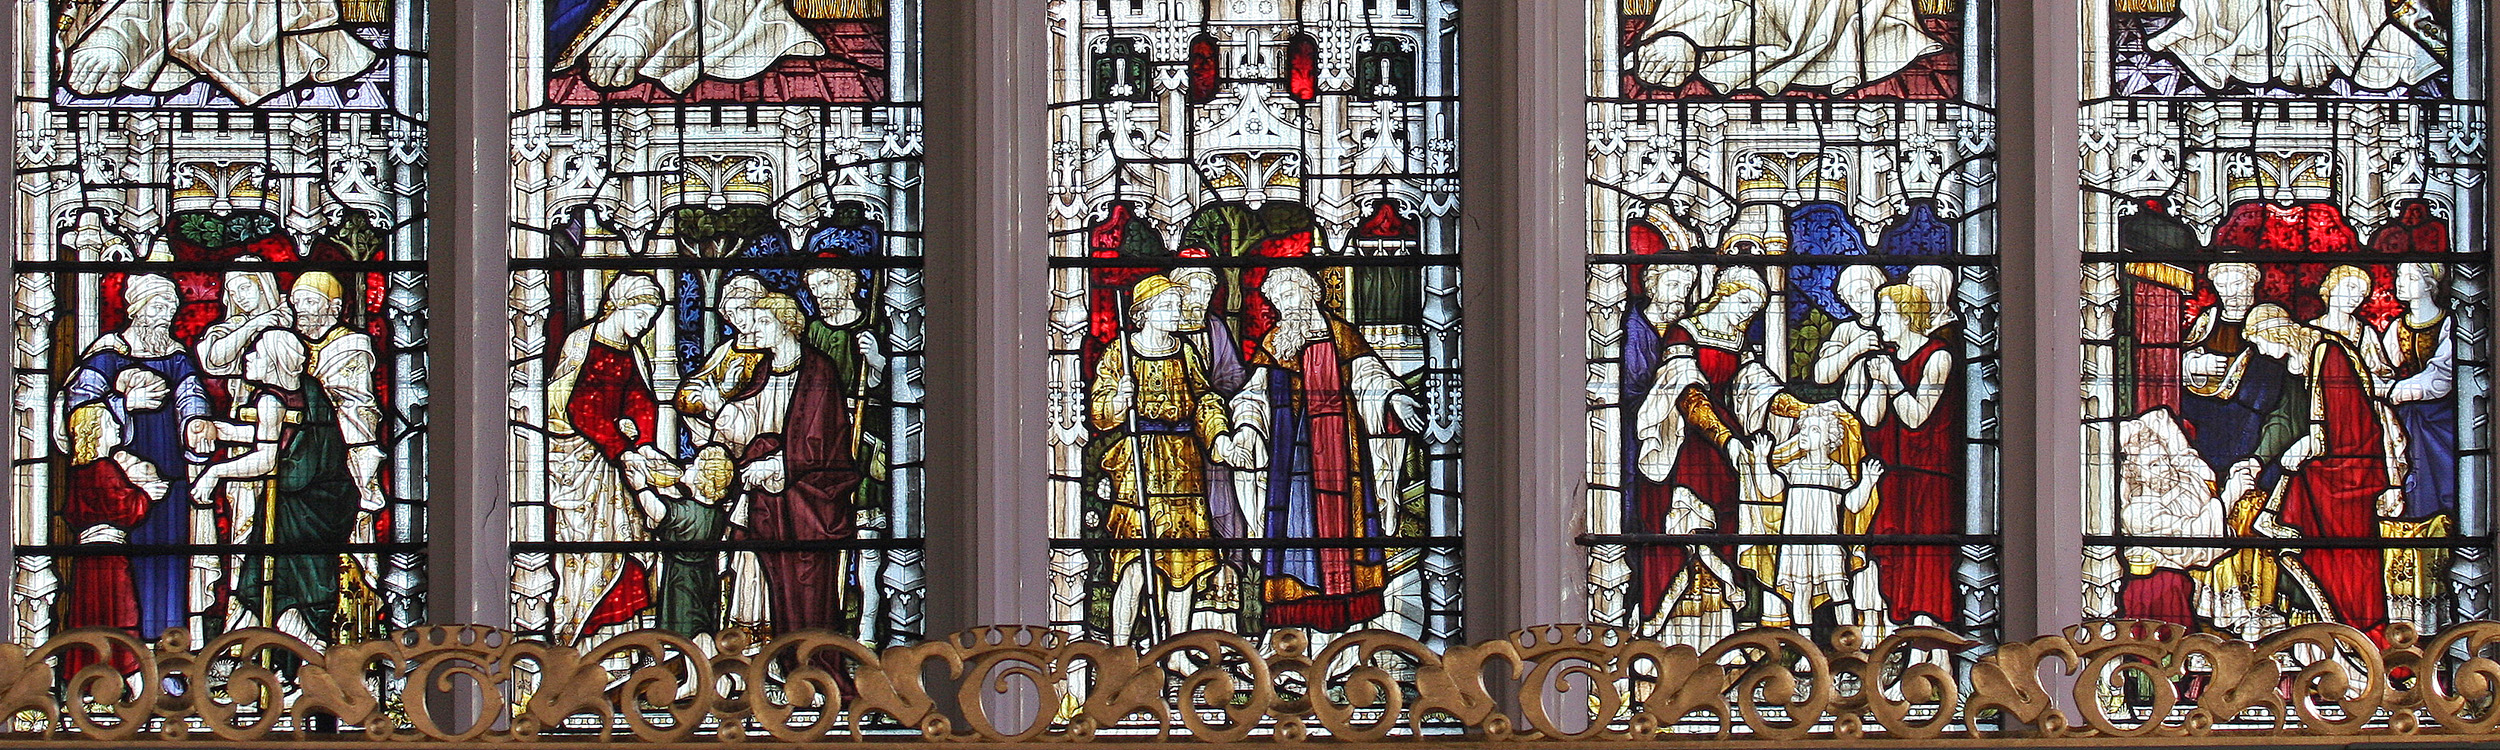 St Giles east window